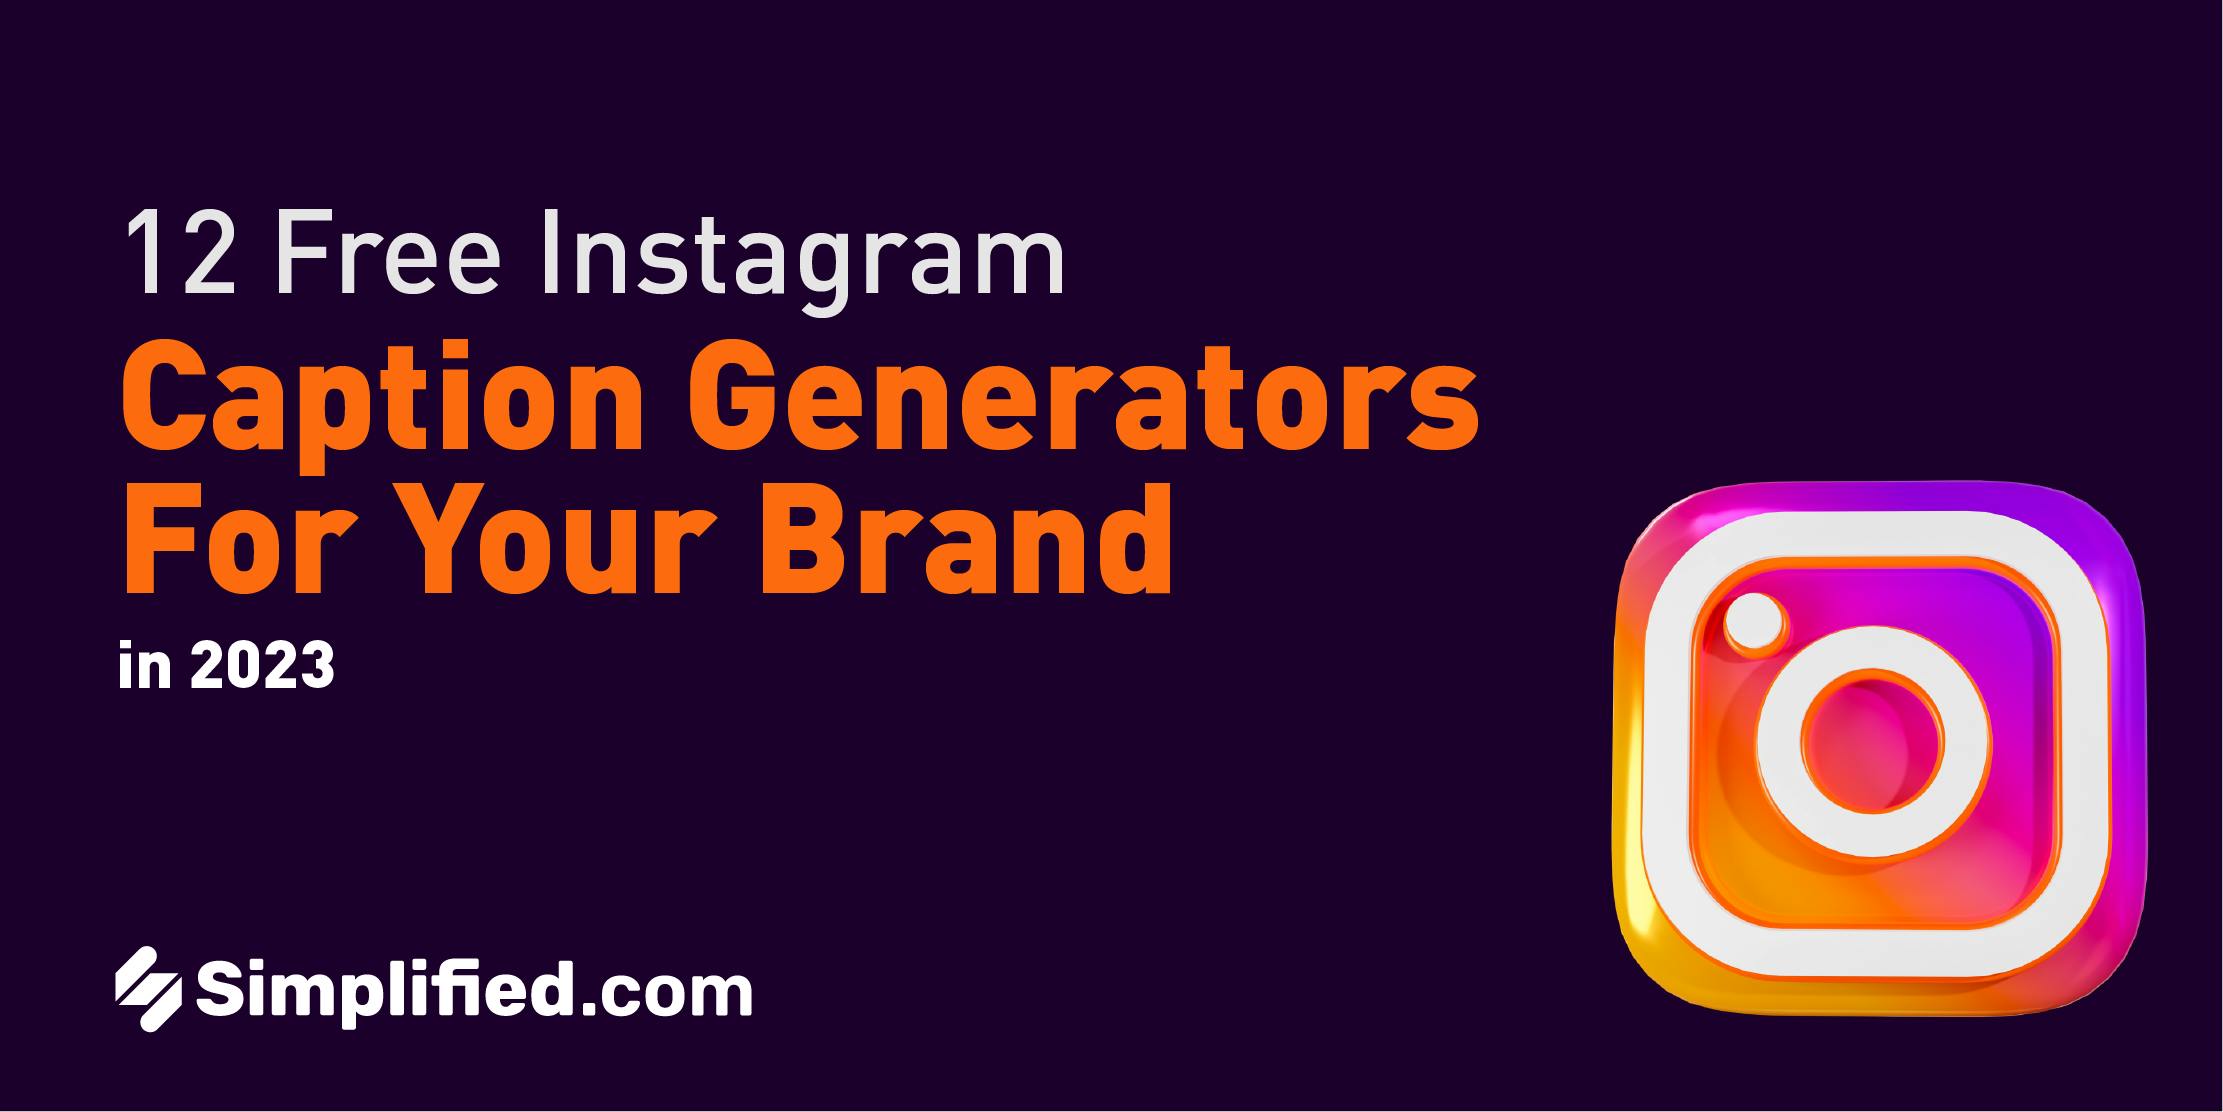 Instagram caption generator: Là một tín đồ của mạng xã hội? Instagram caption generator sẽ giúp bạn tạo những câu chú thích độc đáo cho ảnh của mình, tăng khả năng thu hút người xem và tạo ấn tượng mạnh mẽ. Nhiều câu danh ngôn, trích dẫn và câu tình yêu đầy ý nghĩa đang chờ đón bạn. Hãy cùng tạo nên những bức ảnh xinh đẹp và hoàn hảo trên Instagram.